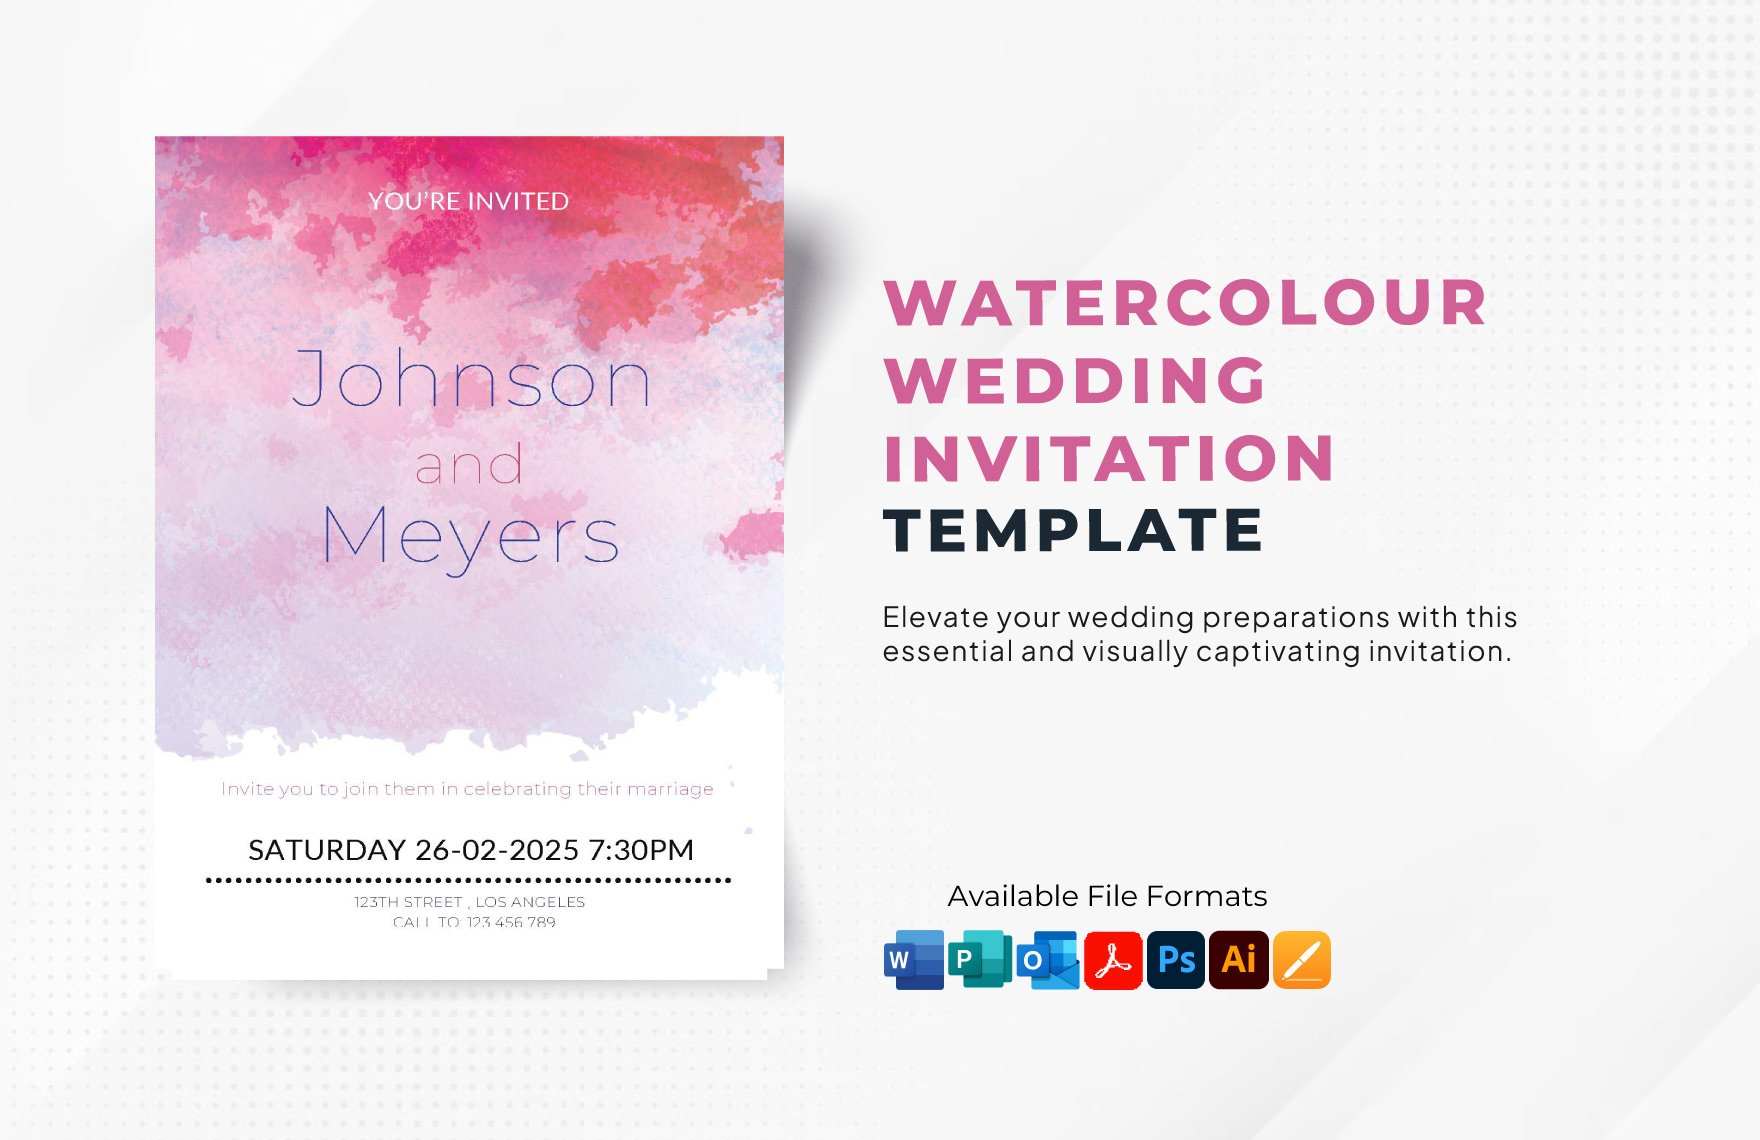 Watercolour Wedding Invitation Template